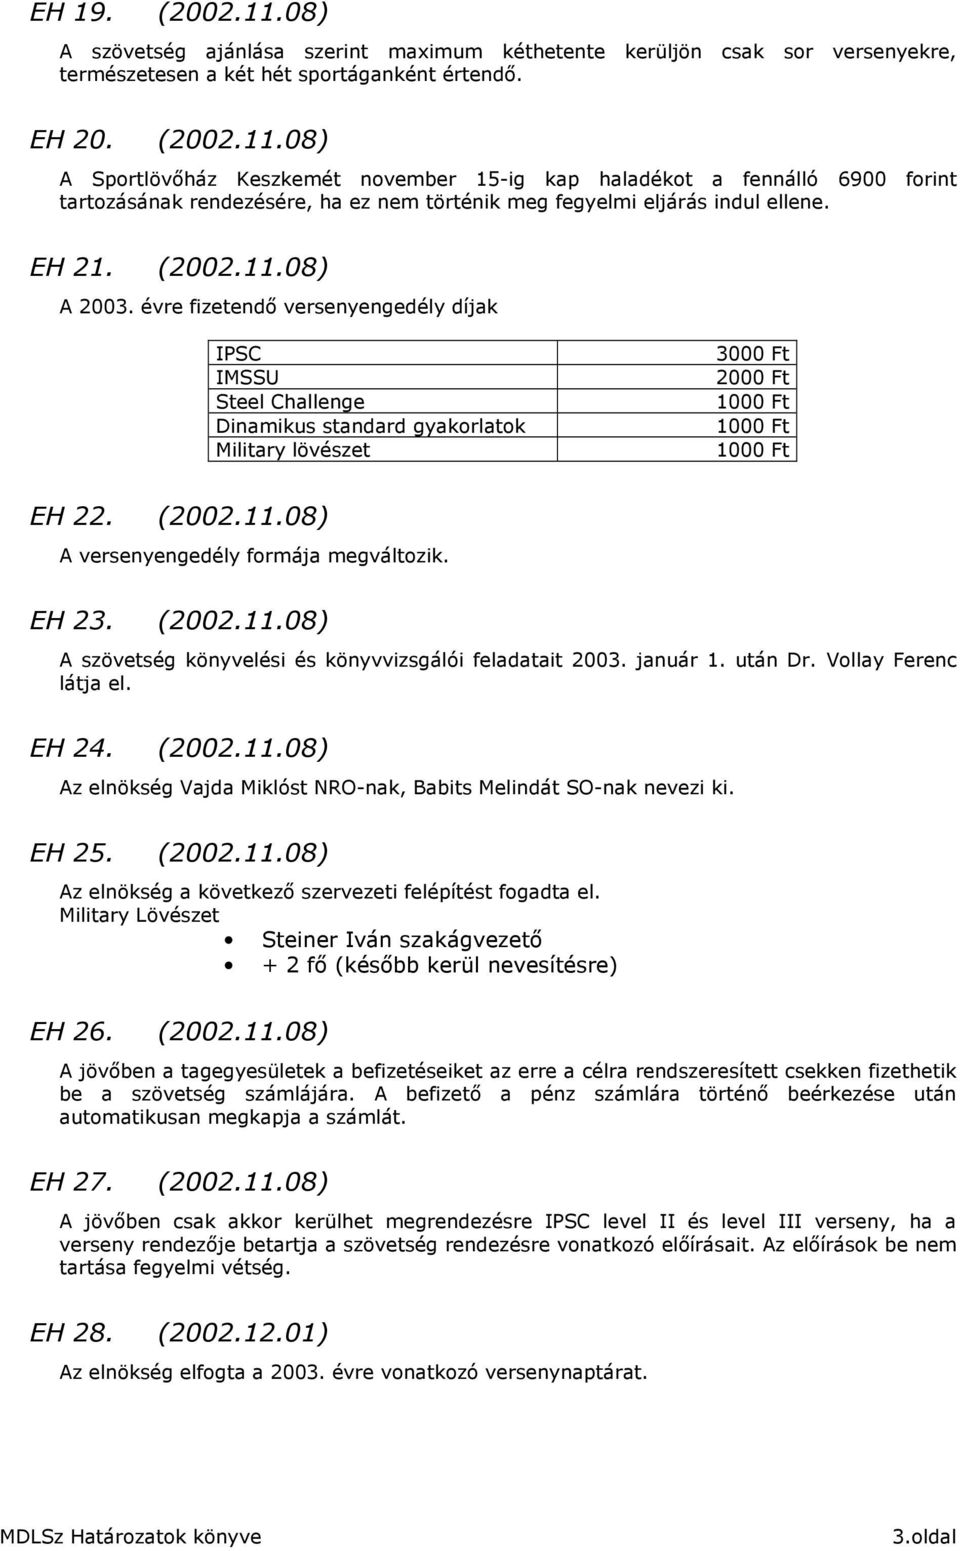 EH 23. (2002.11.08) A szövetség könyvelési és könyvvizsgálói feladatait 2003. január 1. után Dr. Vollay Ferenc látja el. EH 24. (2002.11.08) Az elnökség Vajda Miklóst NRO-nak, Babits Melindát SO-nak nevezi ki.